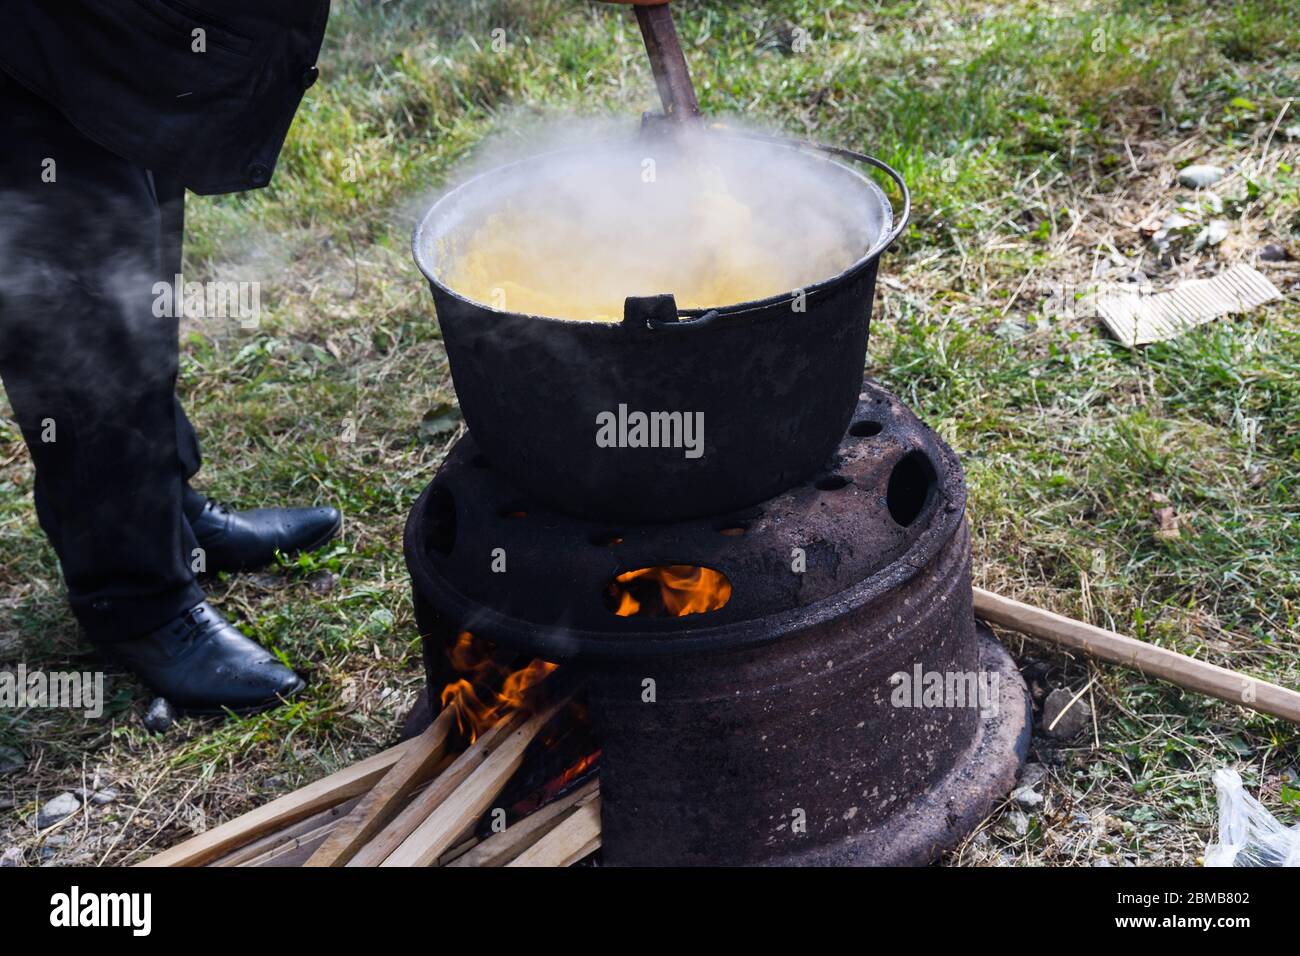 https://c8.alamy.com/compes/2bmb802/muy-grande-caldero-cocinar-alimentos-durante-la-fogata-grandes-ollas-en-el-fuego-preparar-durante-el-festival-de-alimentos-olla-turistica-colgando-sobre-el-fuego-en-un-tripode-cocine-2bmb802.jpg